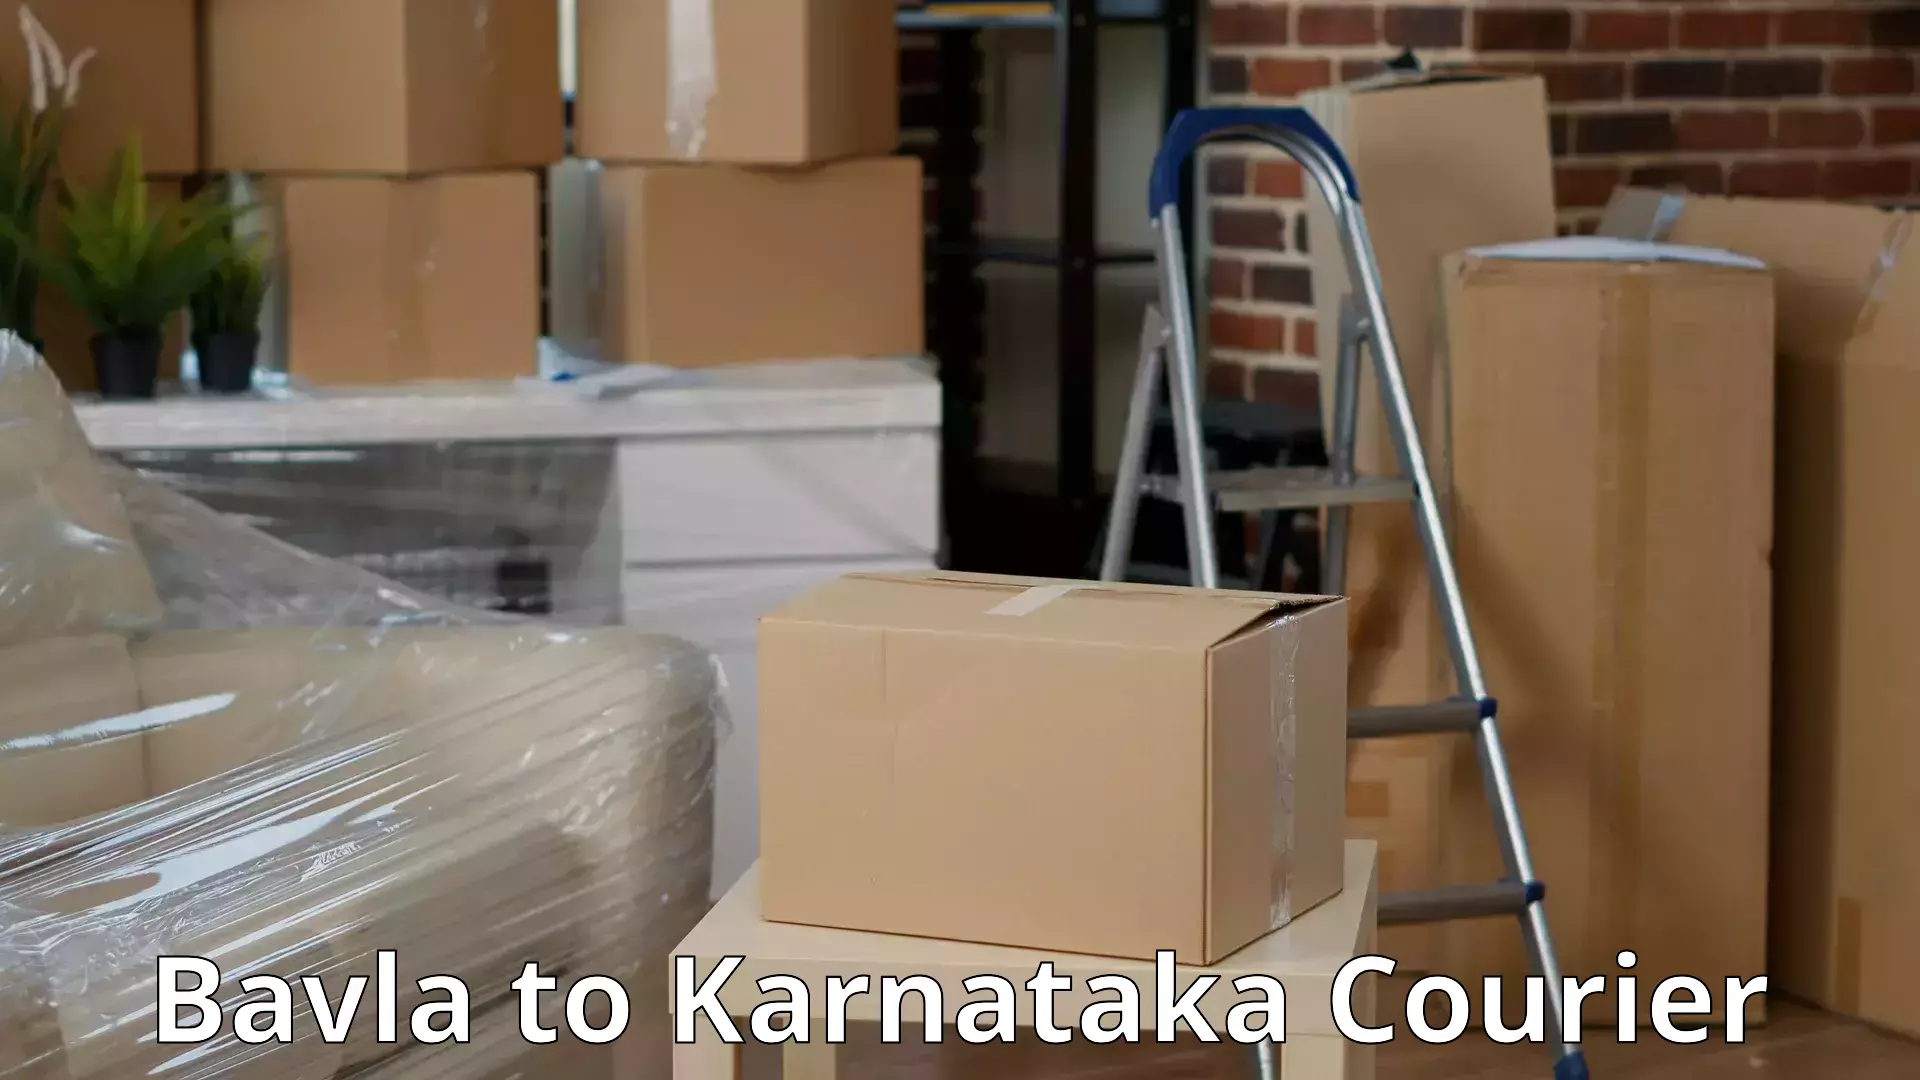 Comprehensive relocation services Bavla to Karnataka